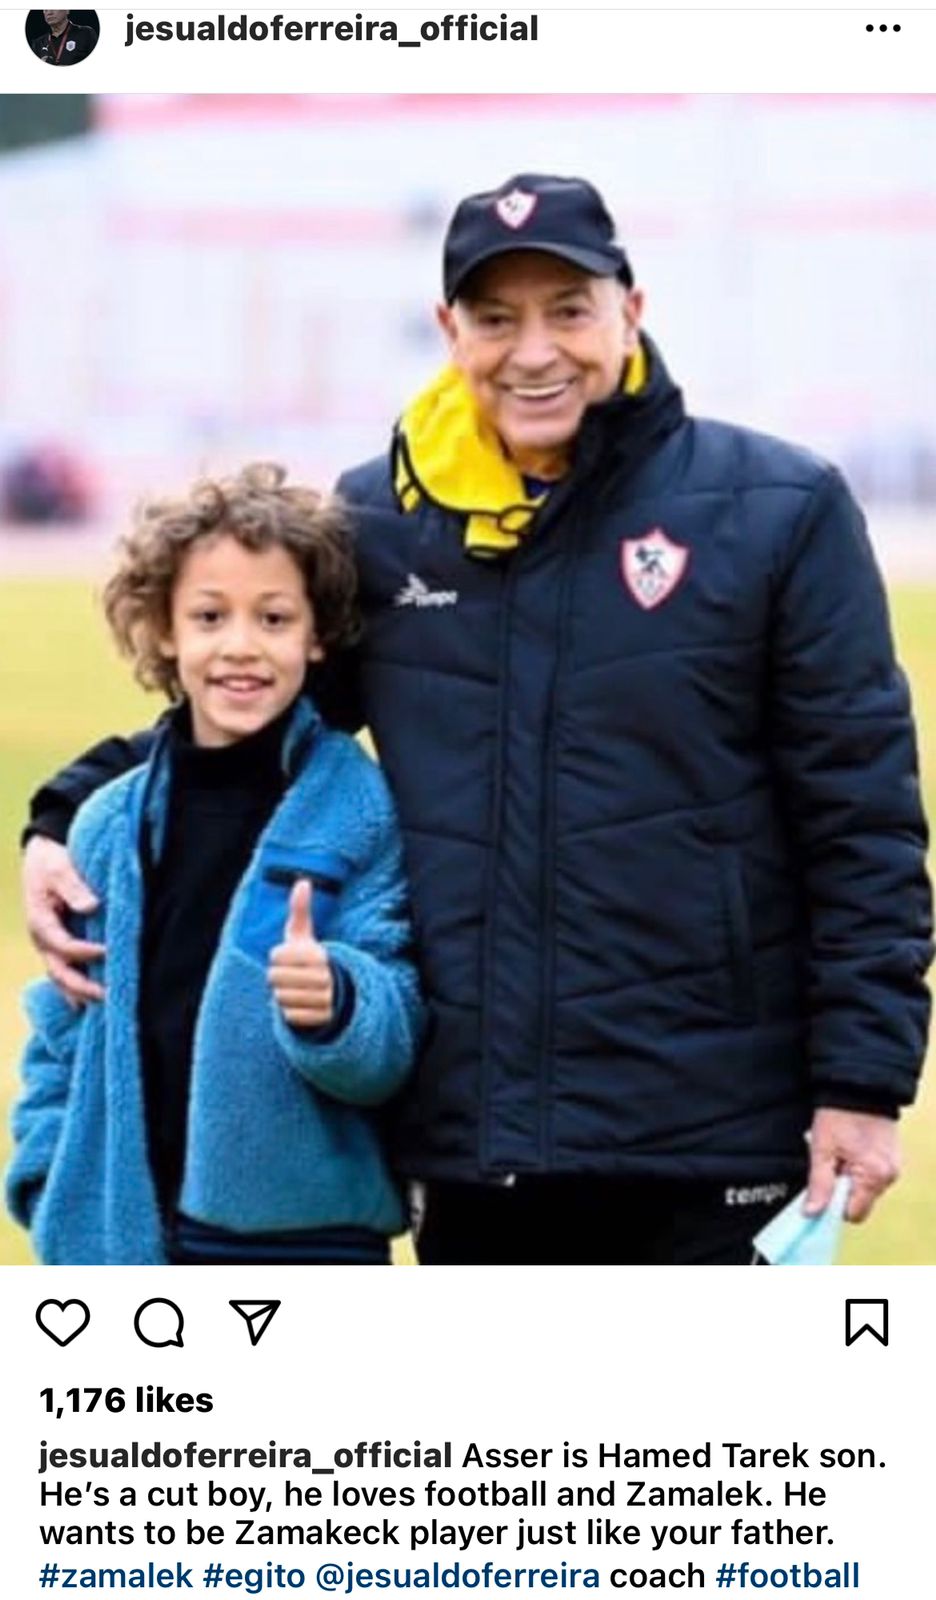 أخبار الدوري | فيريرا مع نجل طارق حامد : يحب الكرة والزمالك ويريد أن يصبح مثل والده ١